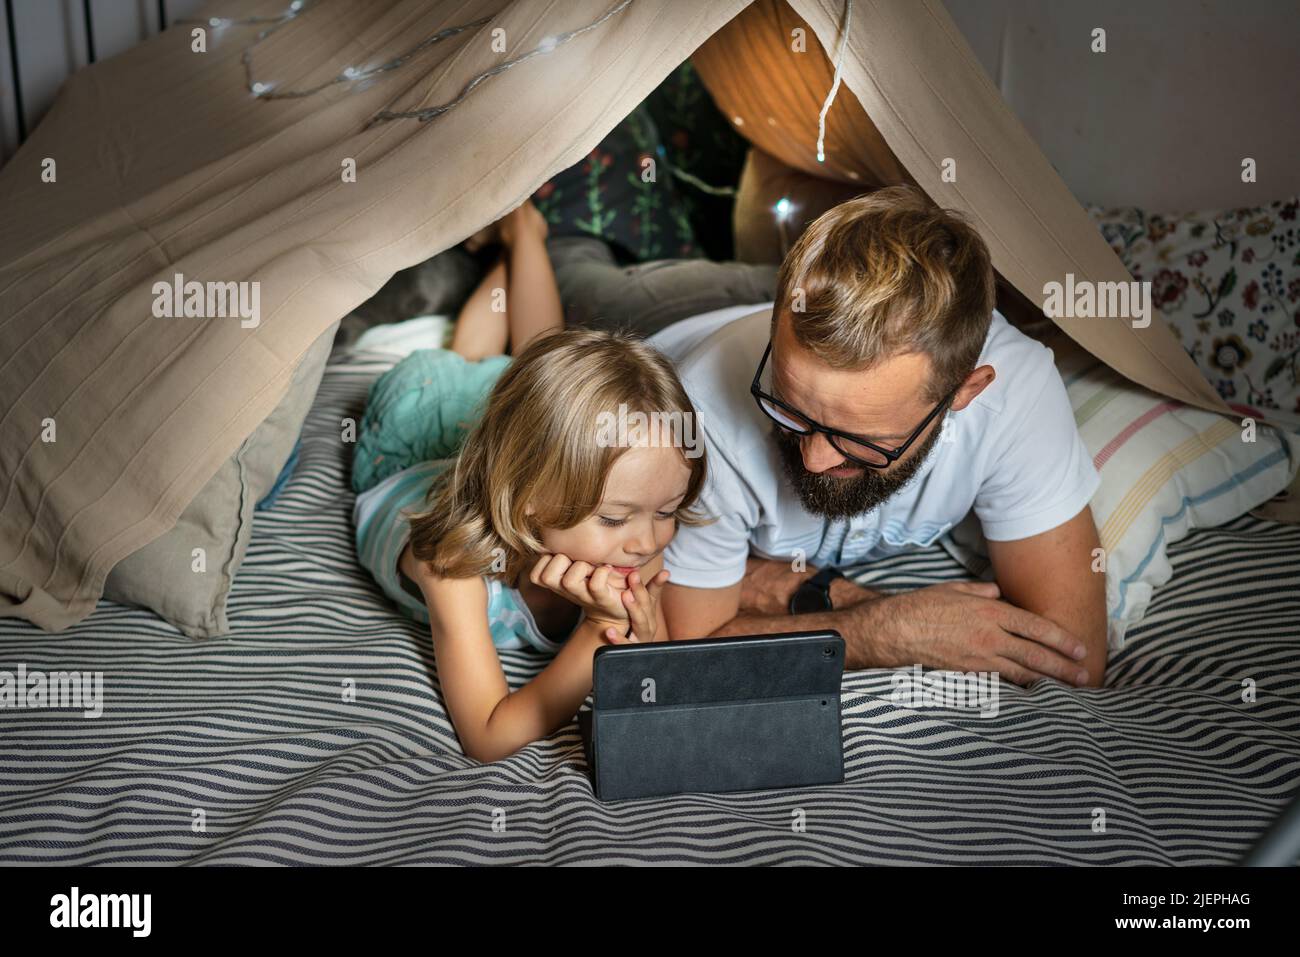 Ritratto di un ragazzo di 6 anni e suo padre che si divertono a giocare in tenda teepee. Padre e figlio usano un tablet digitale per guardare cartoni animati o giocare a giochi per computer che si trovano nella tenda del bambino a casa. Foto Stock